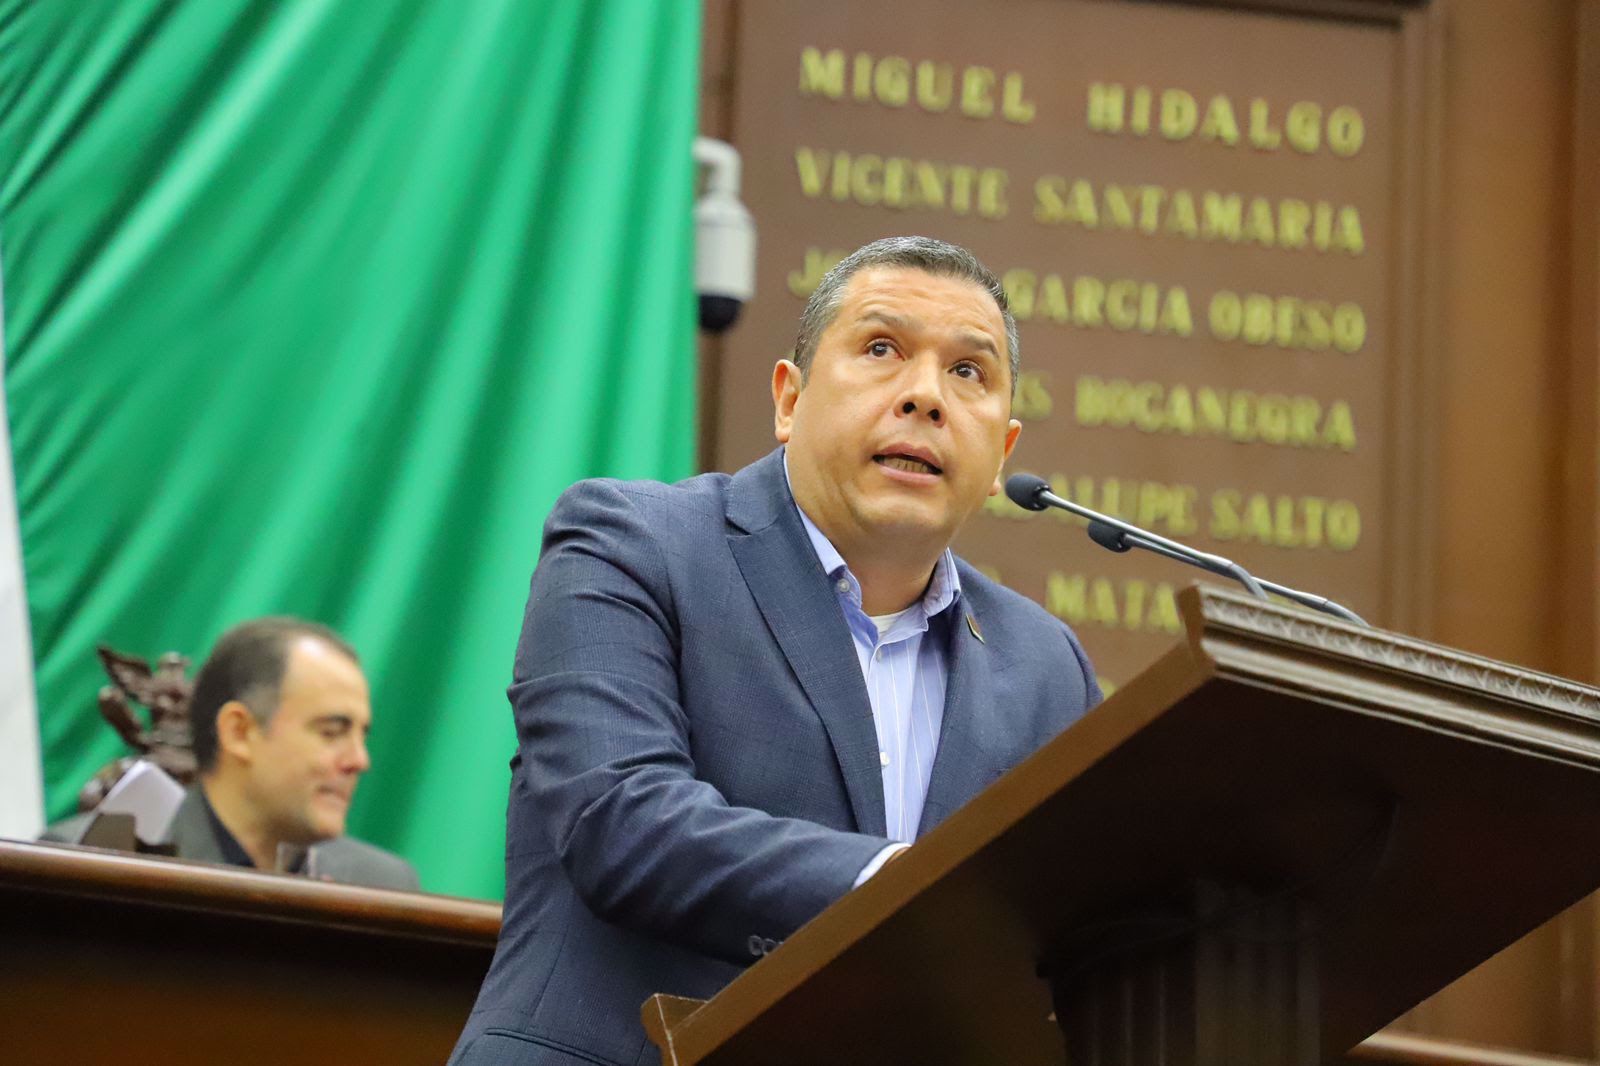 El diputado Juan Carlos Barragán, aprueba la iniciativa del Gobernador del estado, para aumentar las penas en el delito de feminicidio